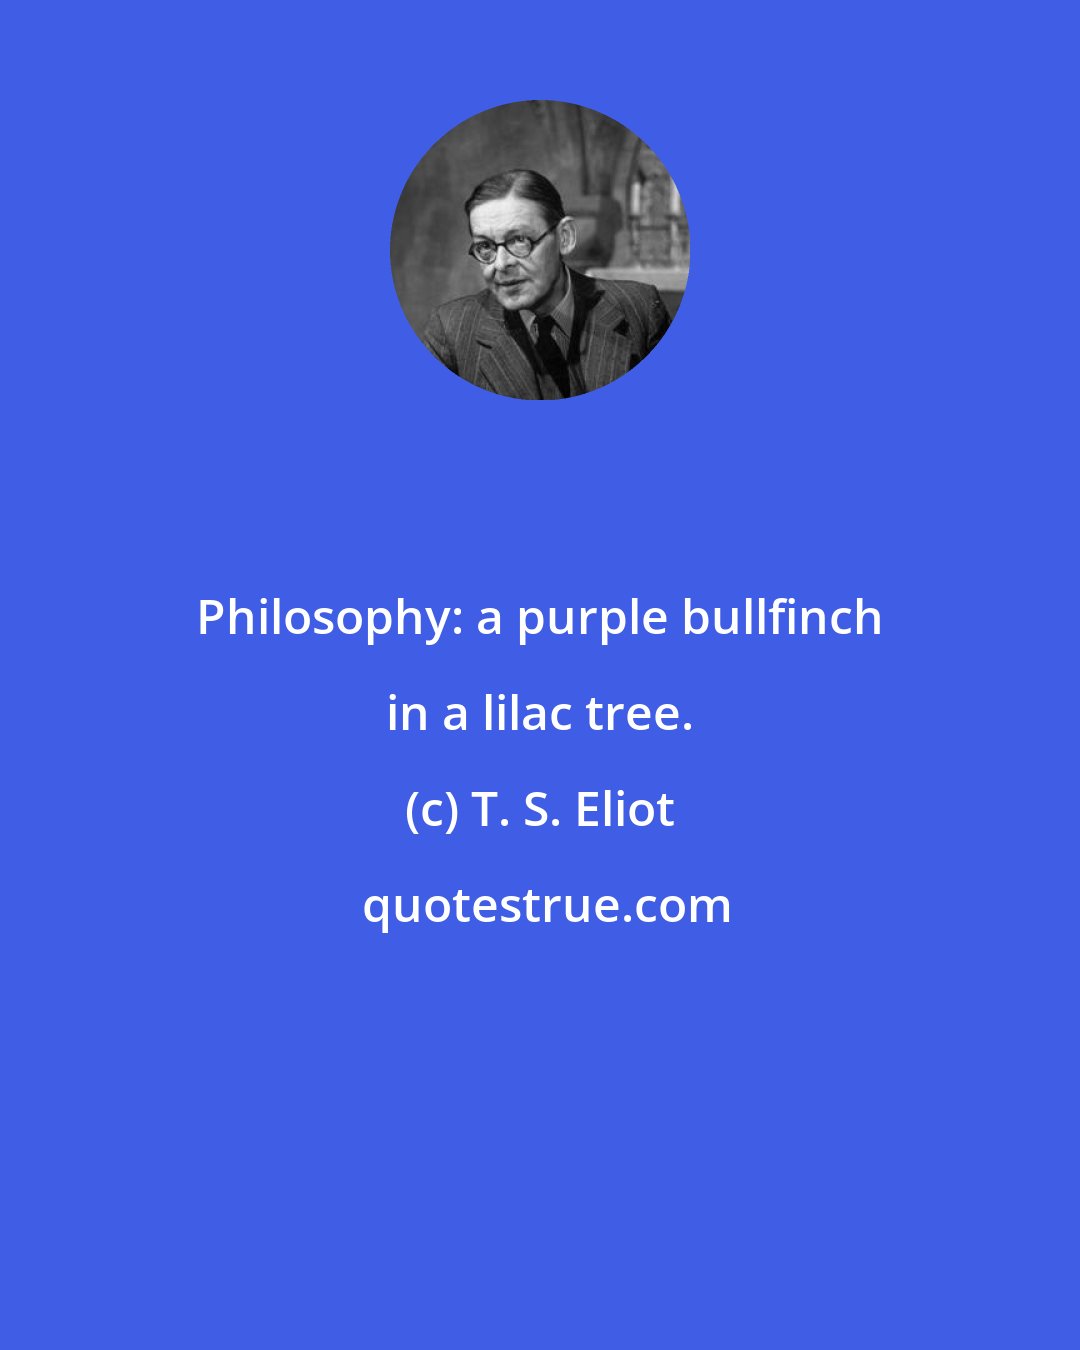 T. S. Eliot: Philosophy: a purple bullfinch in a lilac tree.